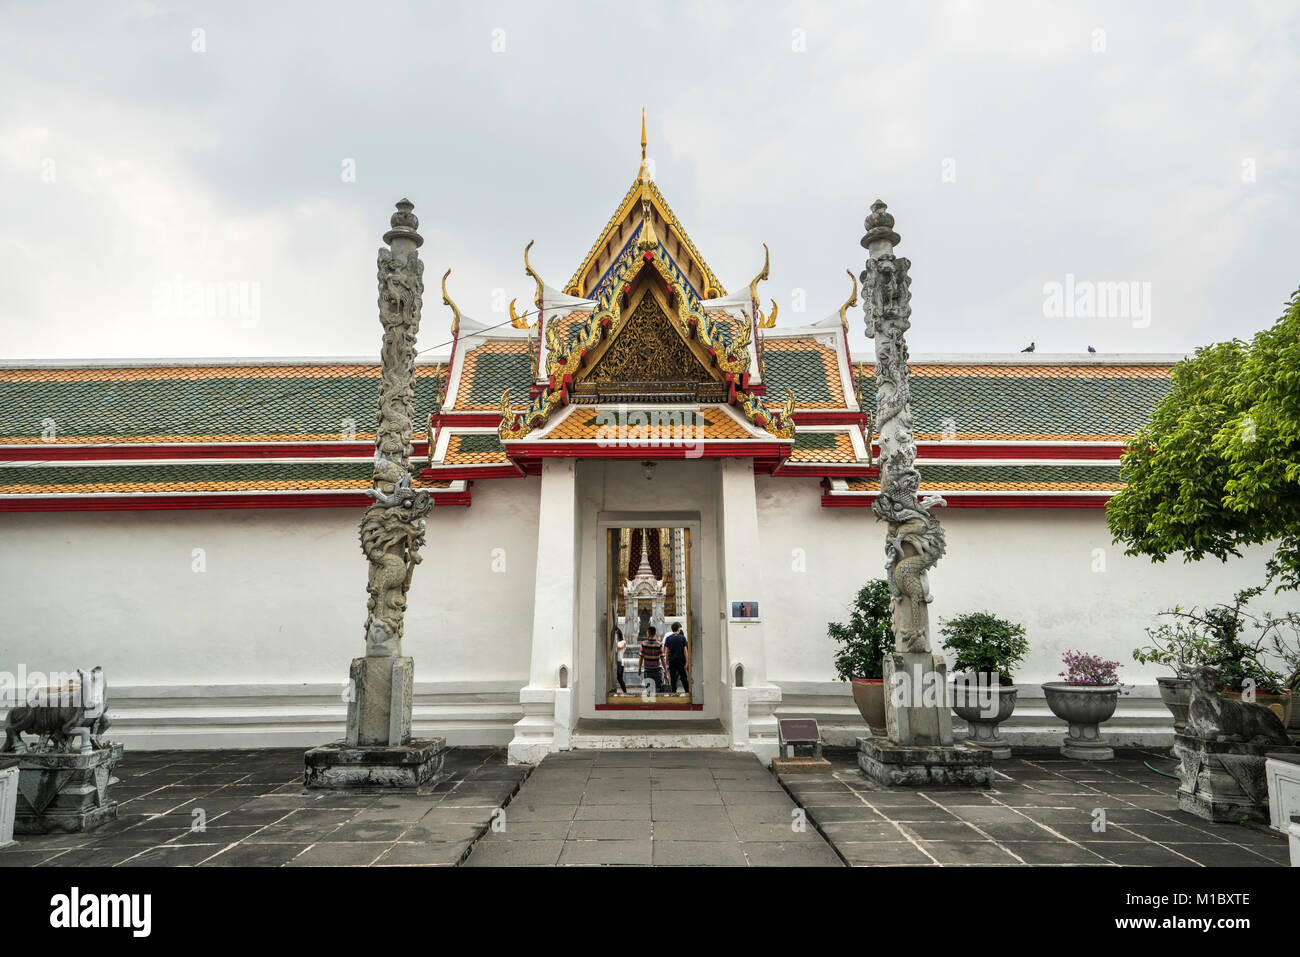 An external view of Wat Arun temple, Bangkok, Thailand Stock Photo